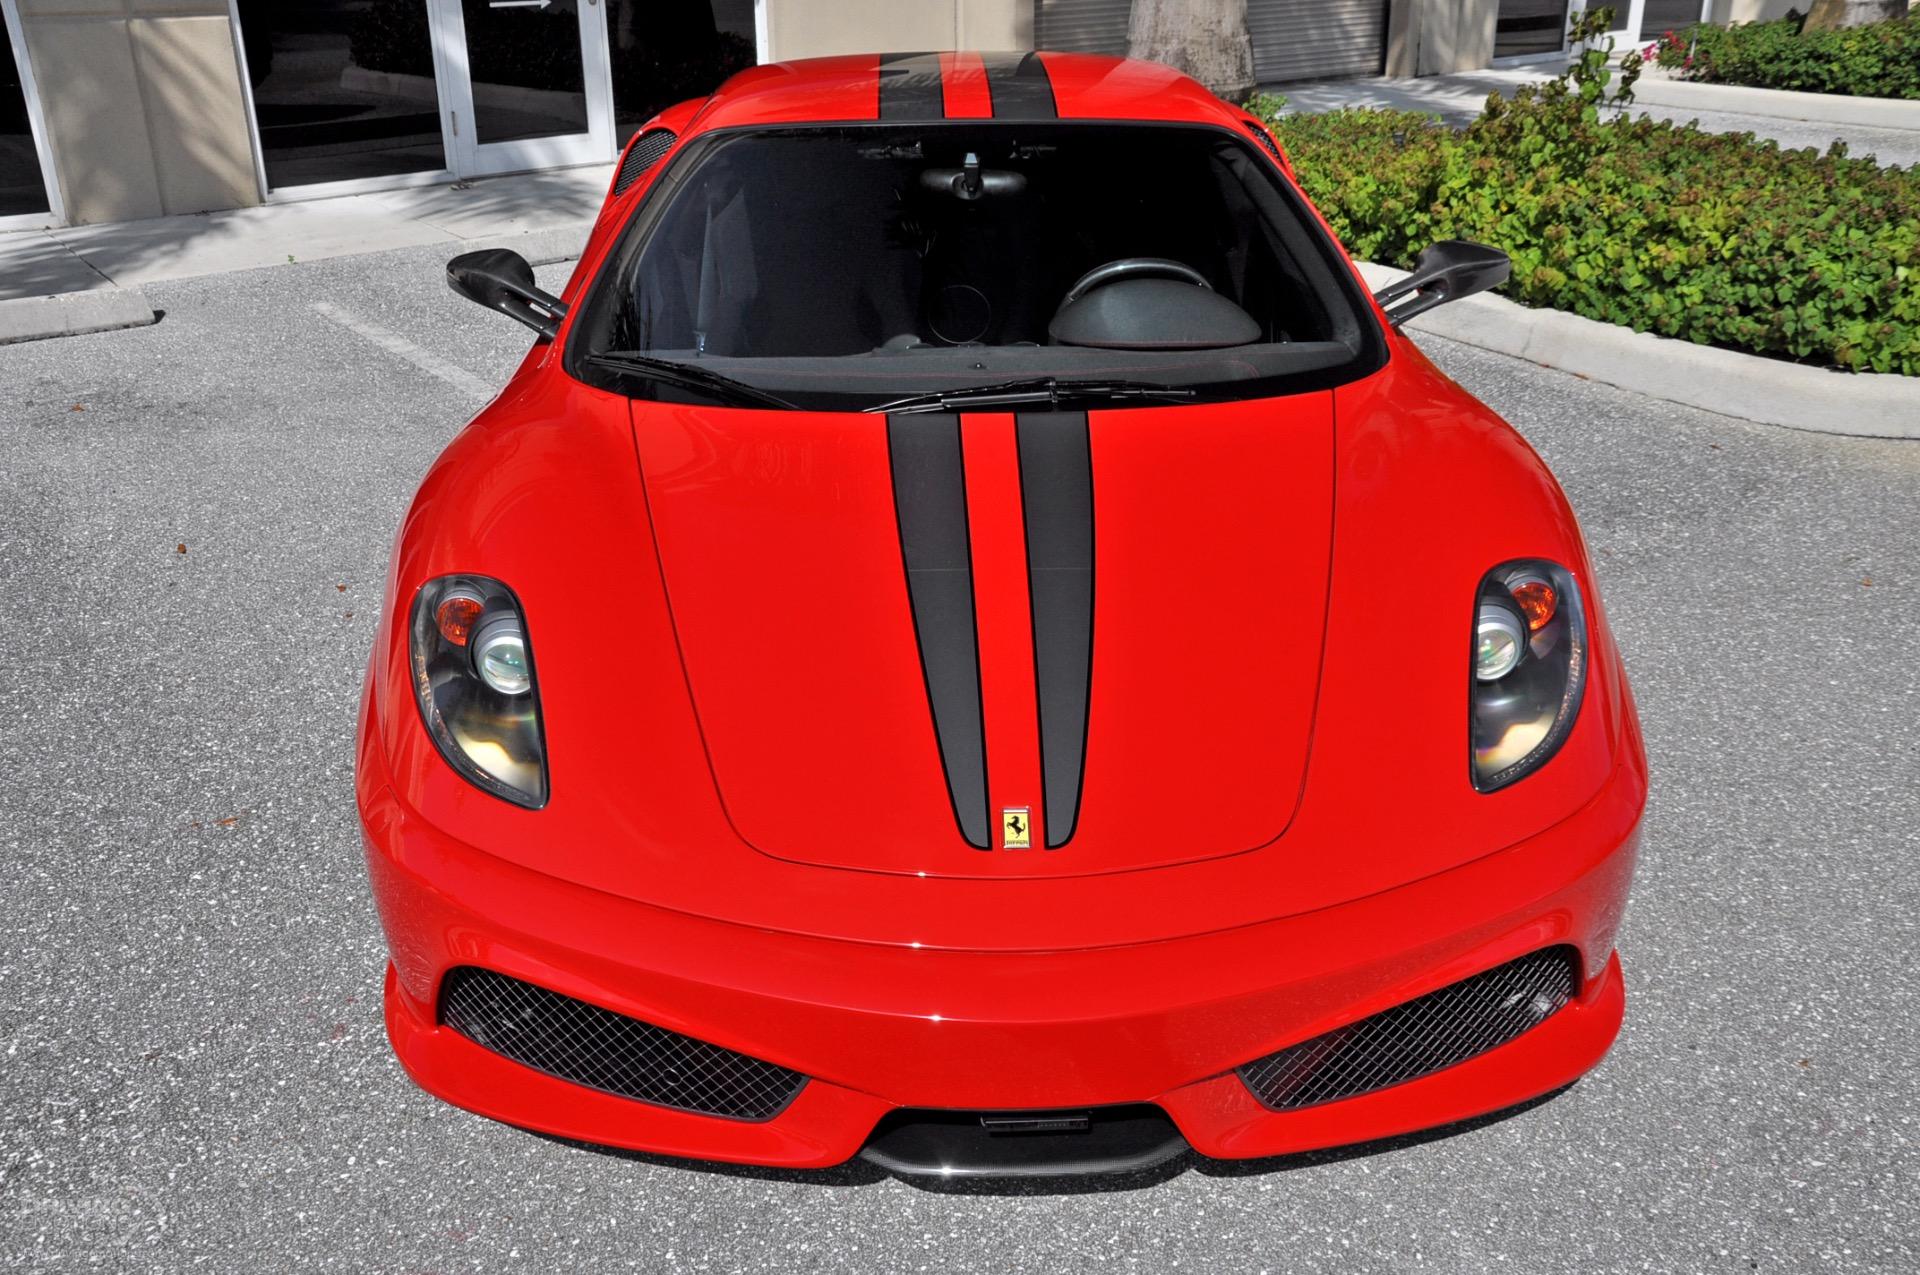 2009 Ferrari F430 Scuderia Scuderia Coupe Stock 5826 For Sale Near